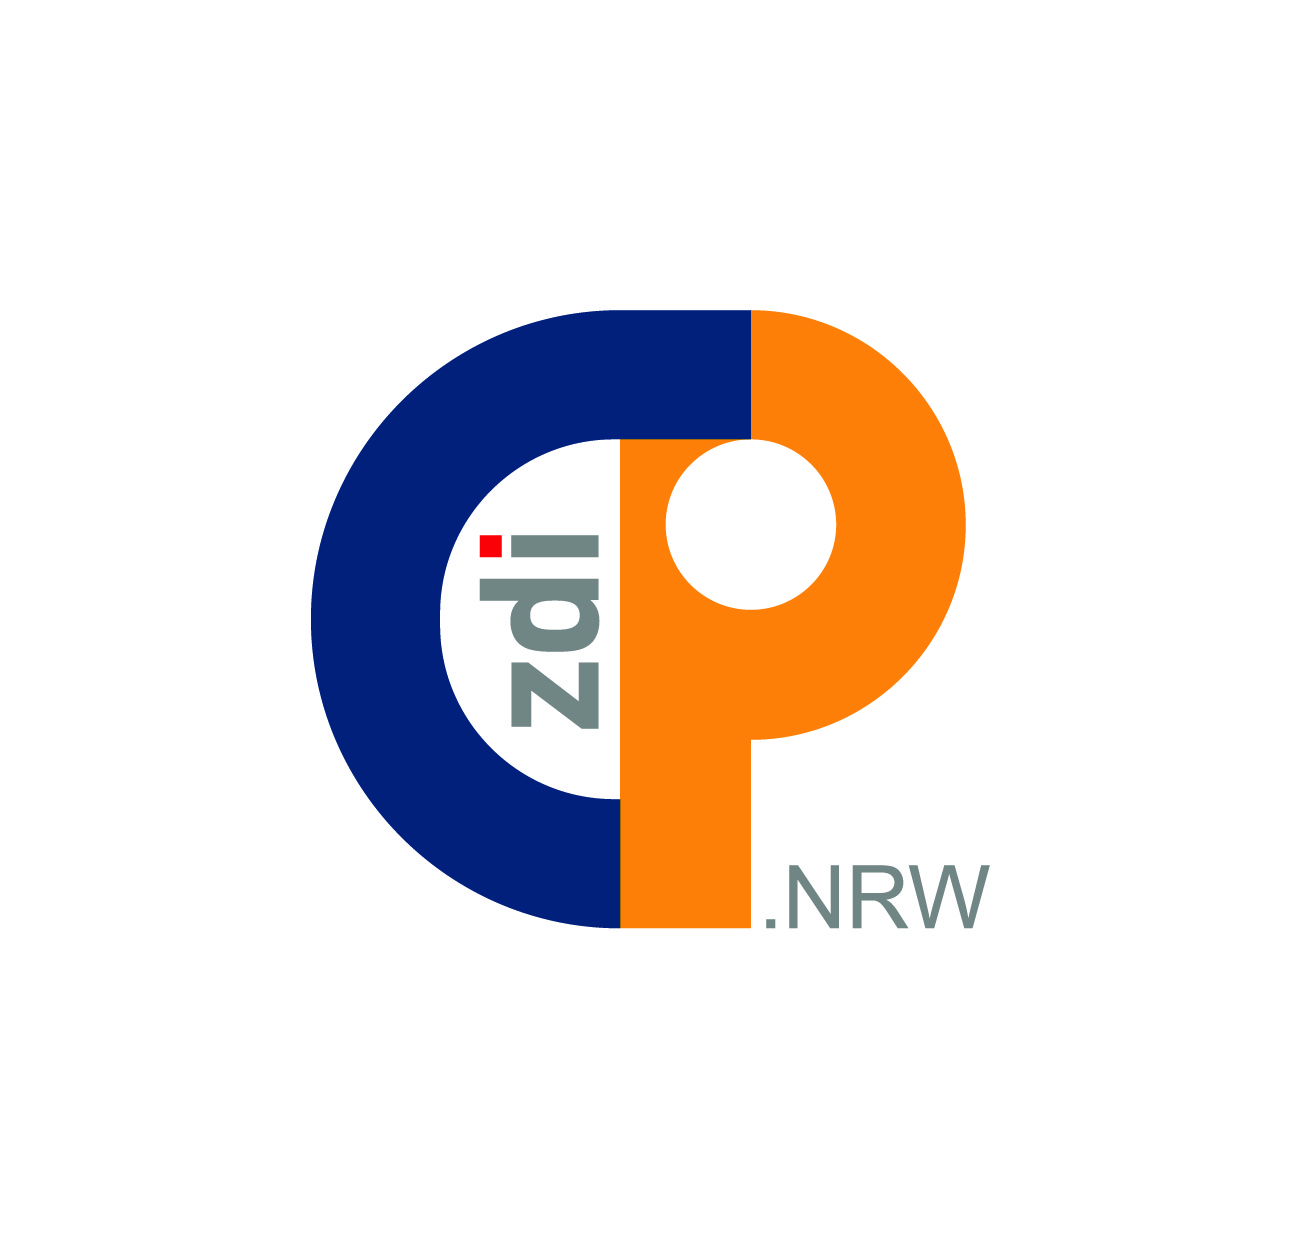 Grafik, zdi topluluk platformunun yeni logosunu göstermektedir. Turuncu bir P'ye dönüşen koyu mavi bir C'ye sahiptir. C ve P arasındaki beyaz boşlukta zdi gri, i üzerindeki nokta kırmızıdır. NRW, P'nin yanında altta küçük gri harflerle yazılır.